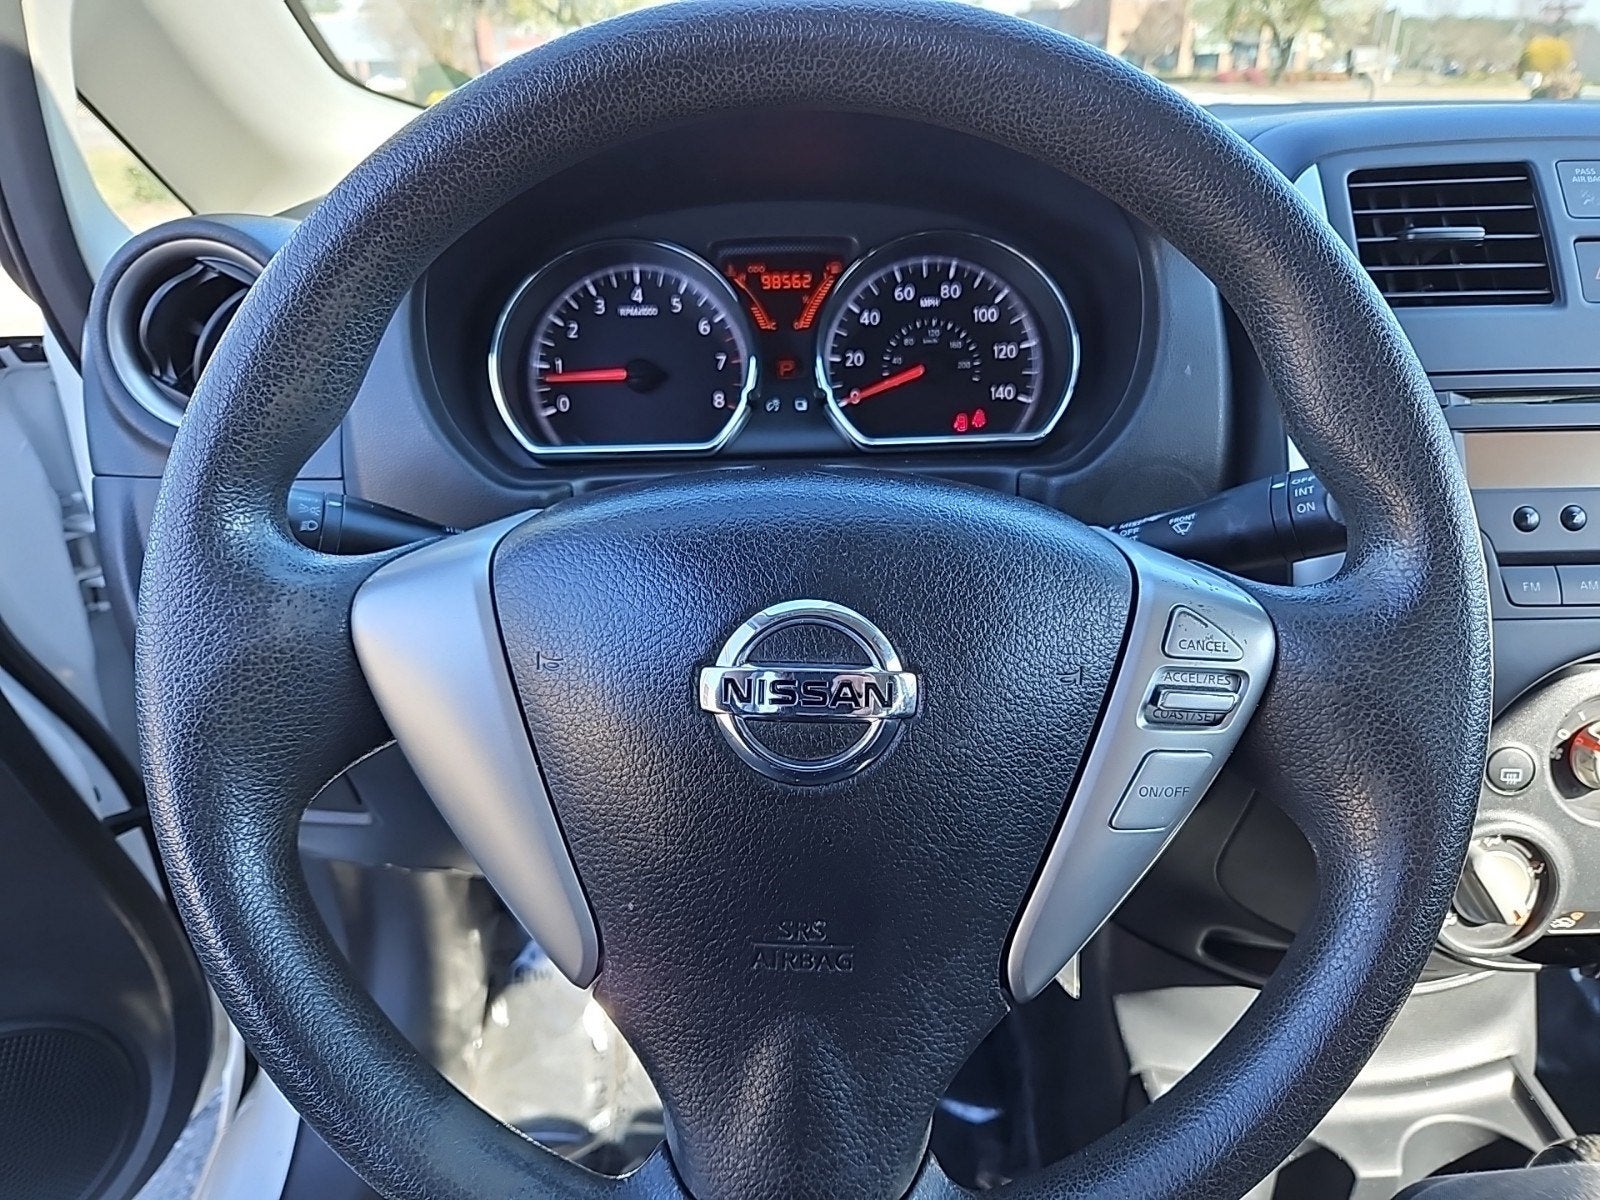 2014 Nissan Versa Note S Plus Hatchback